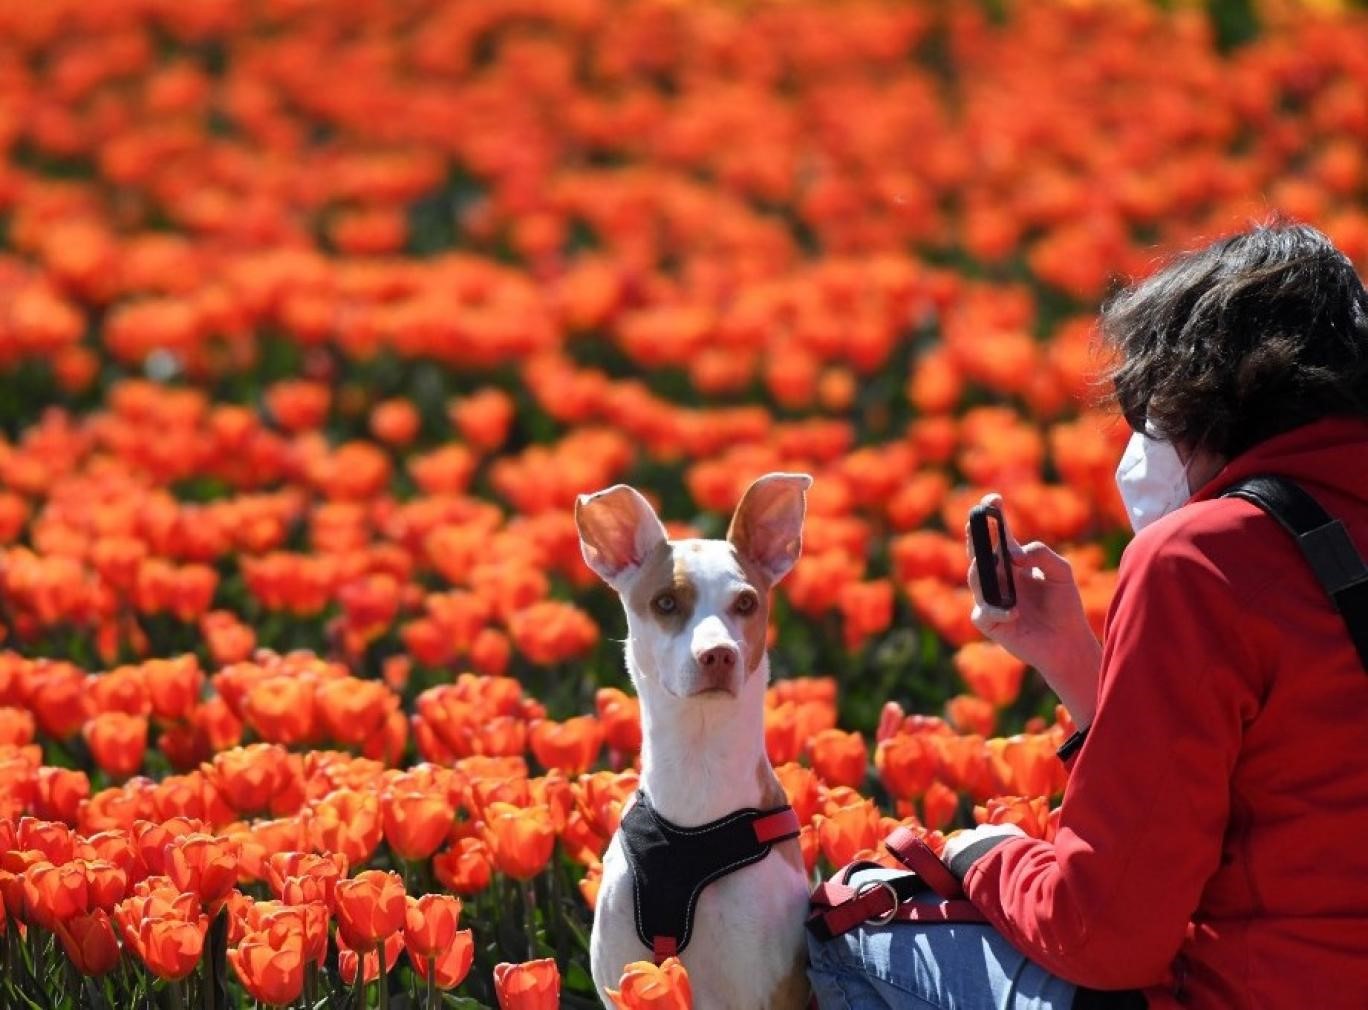 سگی در کنار صاحبش در مزرعه گل